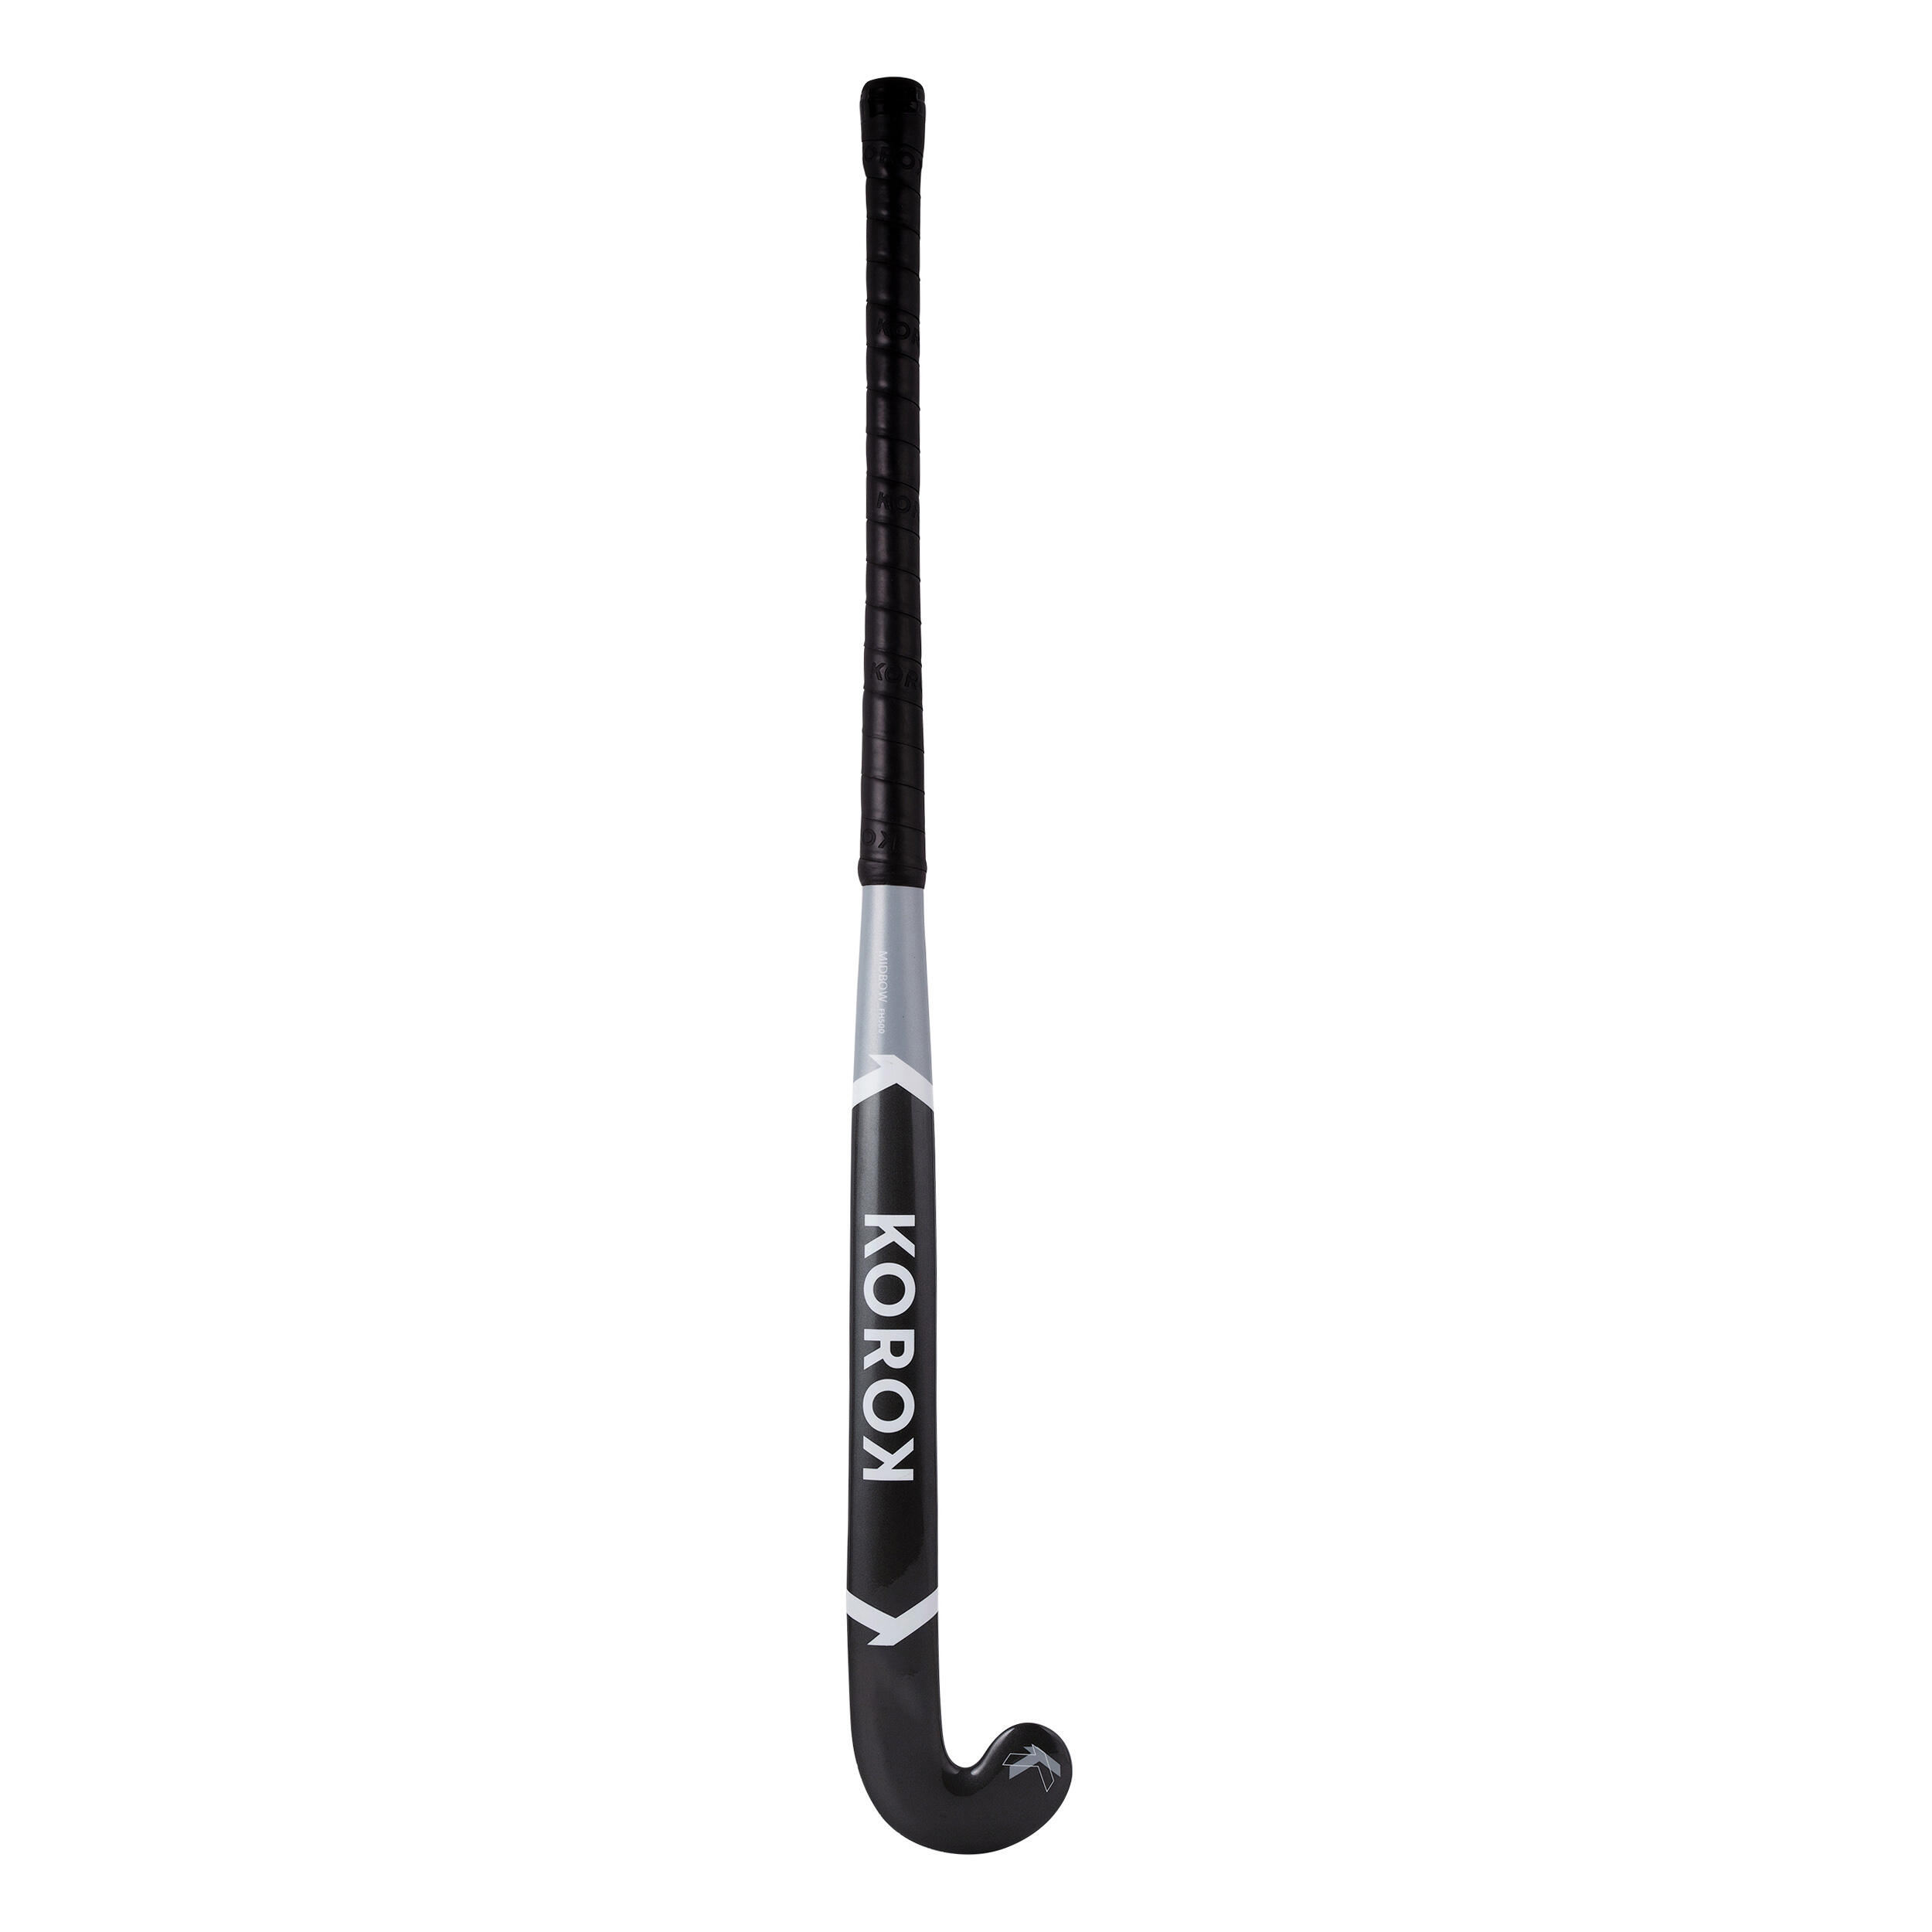 Adult Beginner 100% Fibreglass Mid Bow Indoor Field Hockey Stick FH500 - Grey 6/8